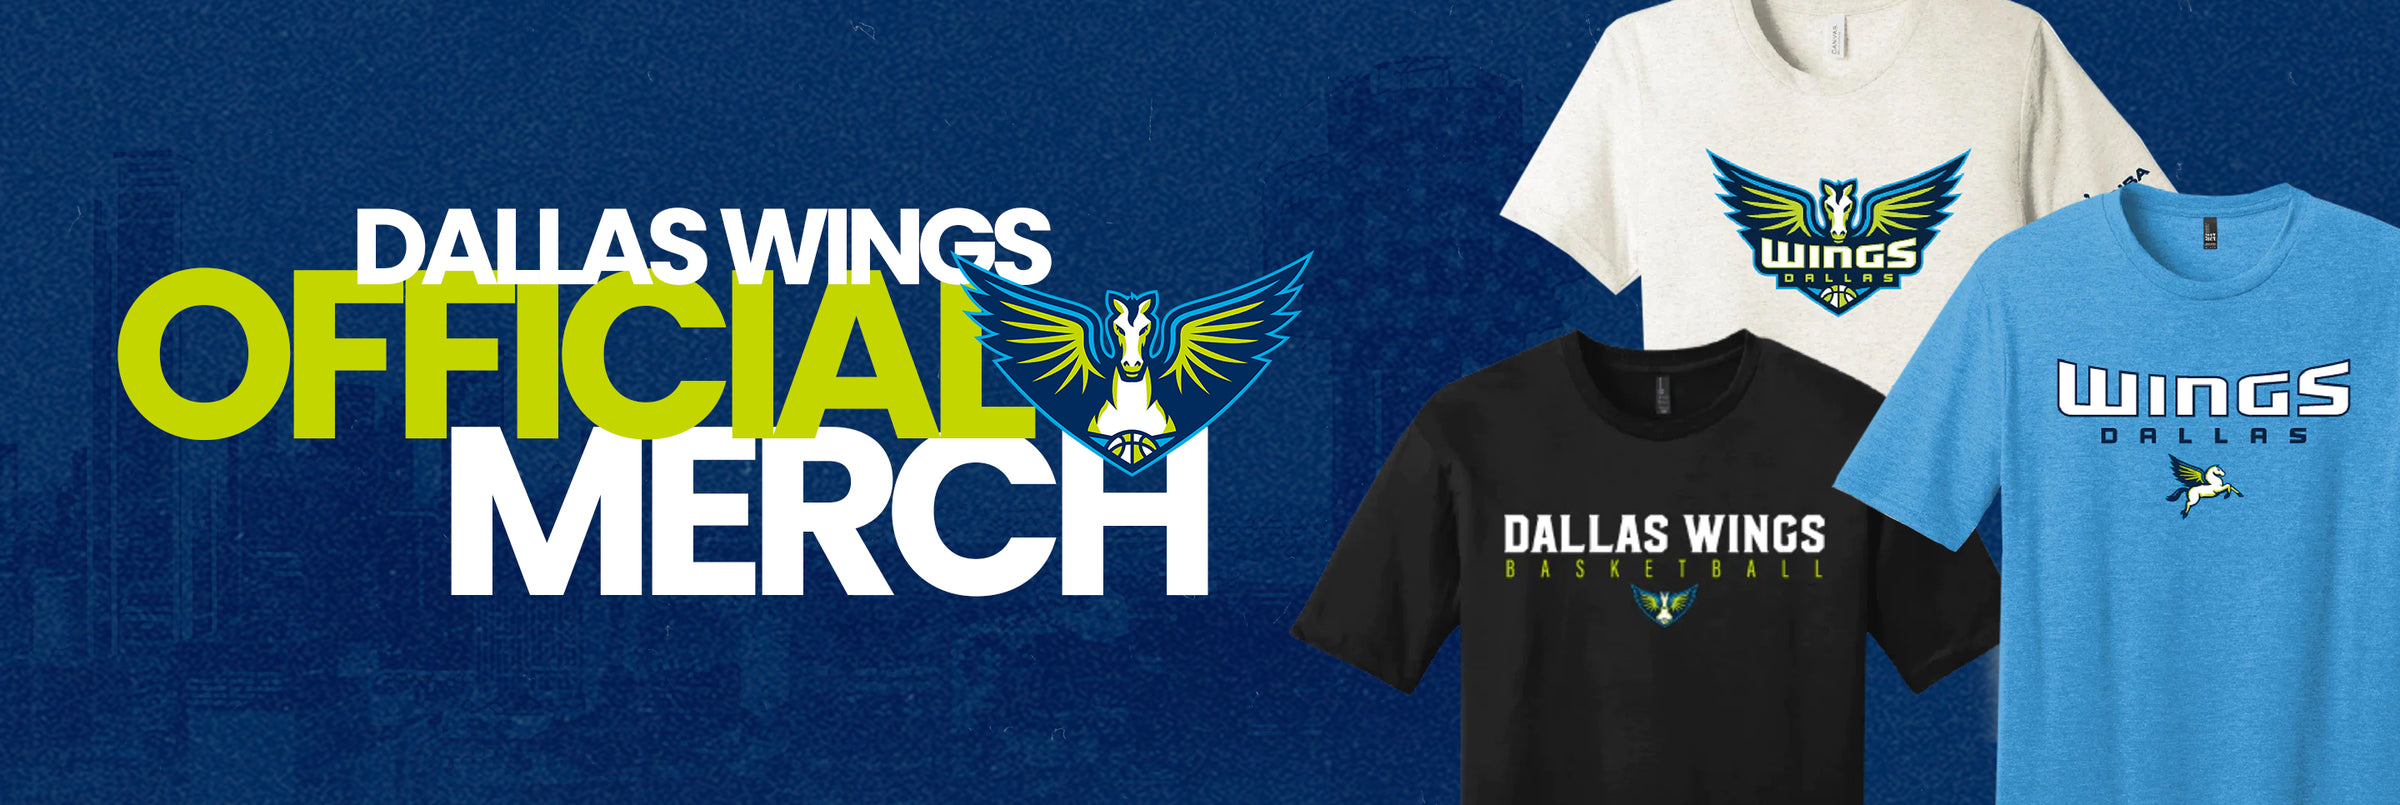 Dallas Wings Shop by Campus Customs